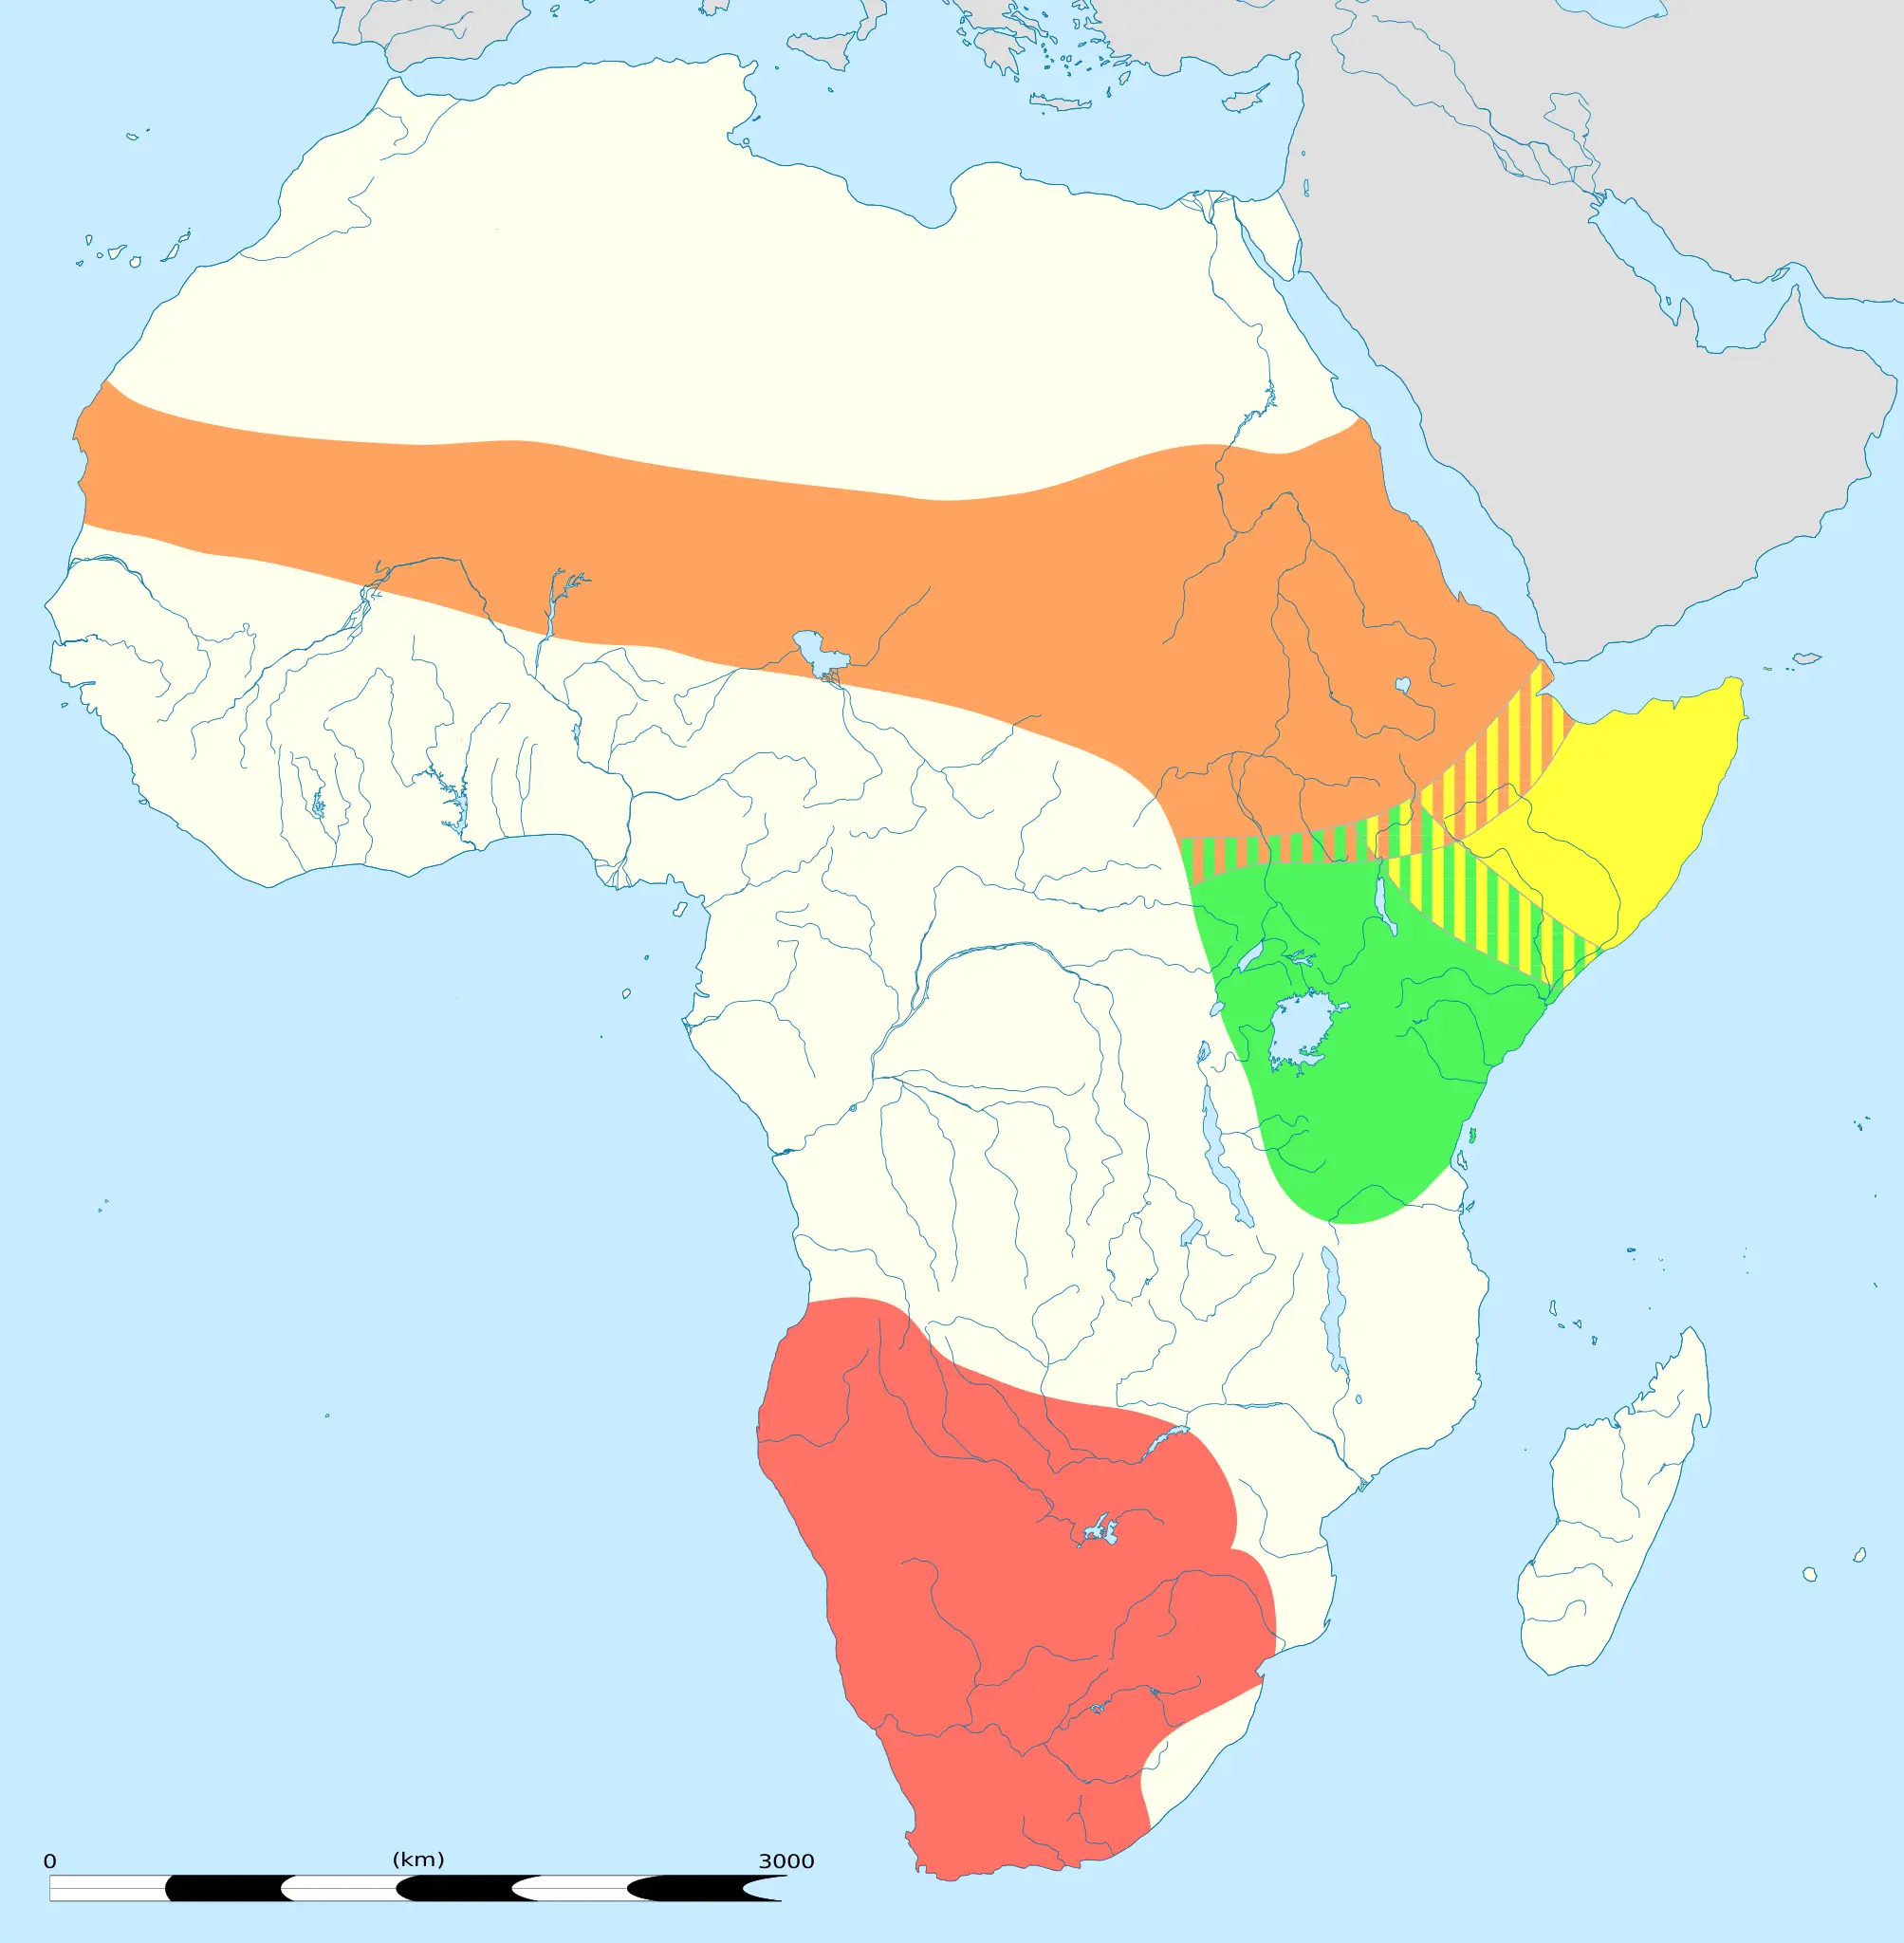 Masai ostrich habitat map